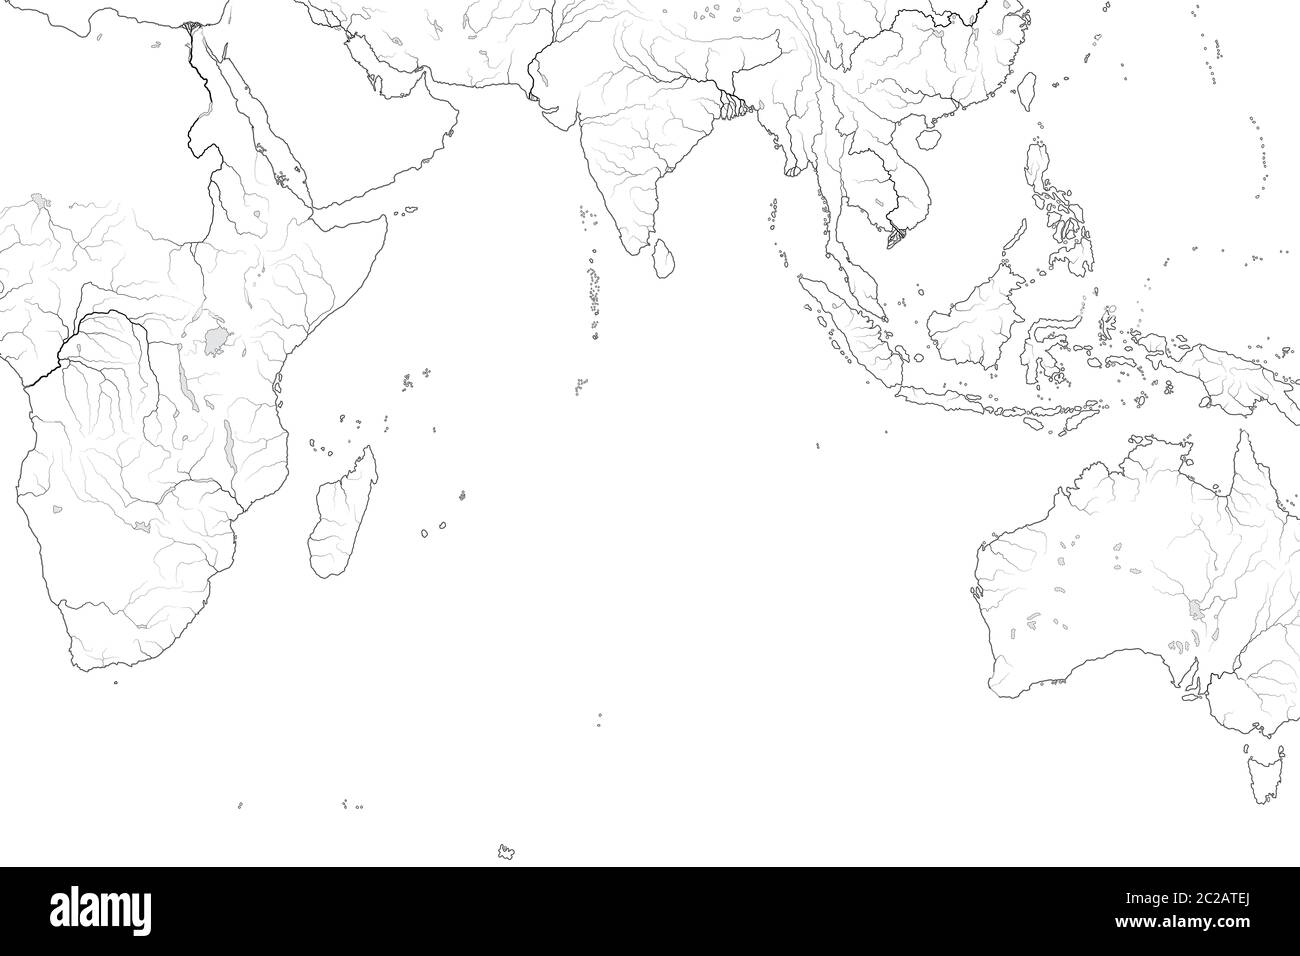 Carte du monde de L'OCÉAN INDIEN: Mer Erythraean, Madagascar, Ceylan, Bengale, Inde, Afrique, Australie, Indonésie. Carte géographique. Banque D'Images